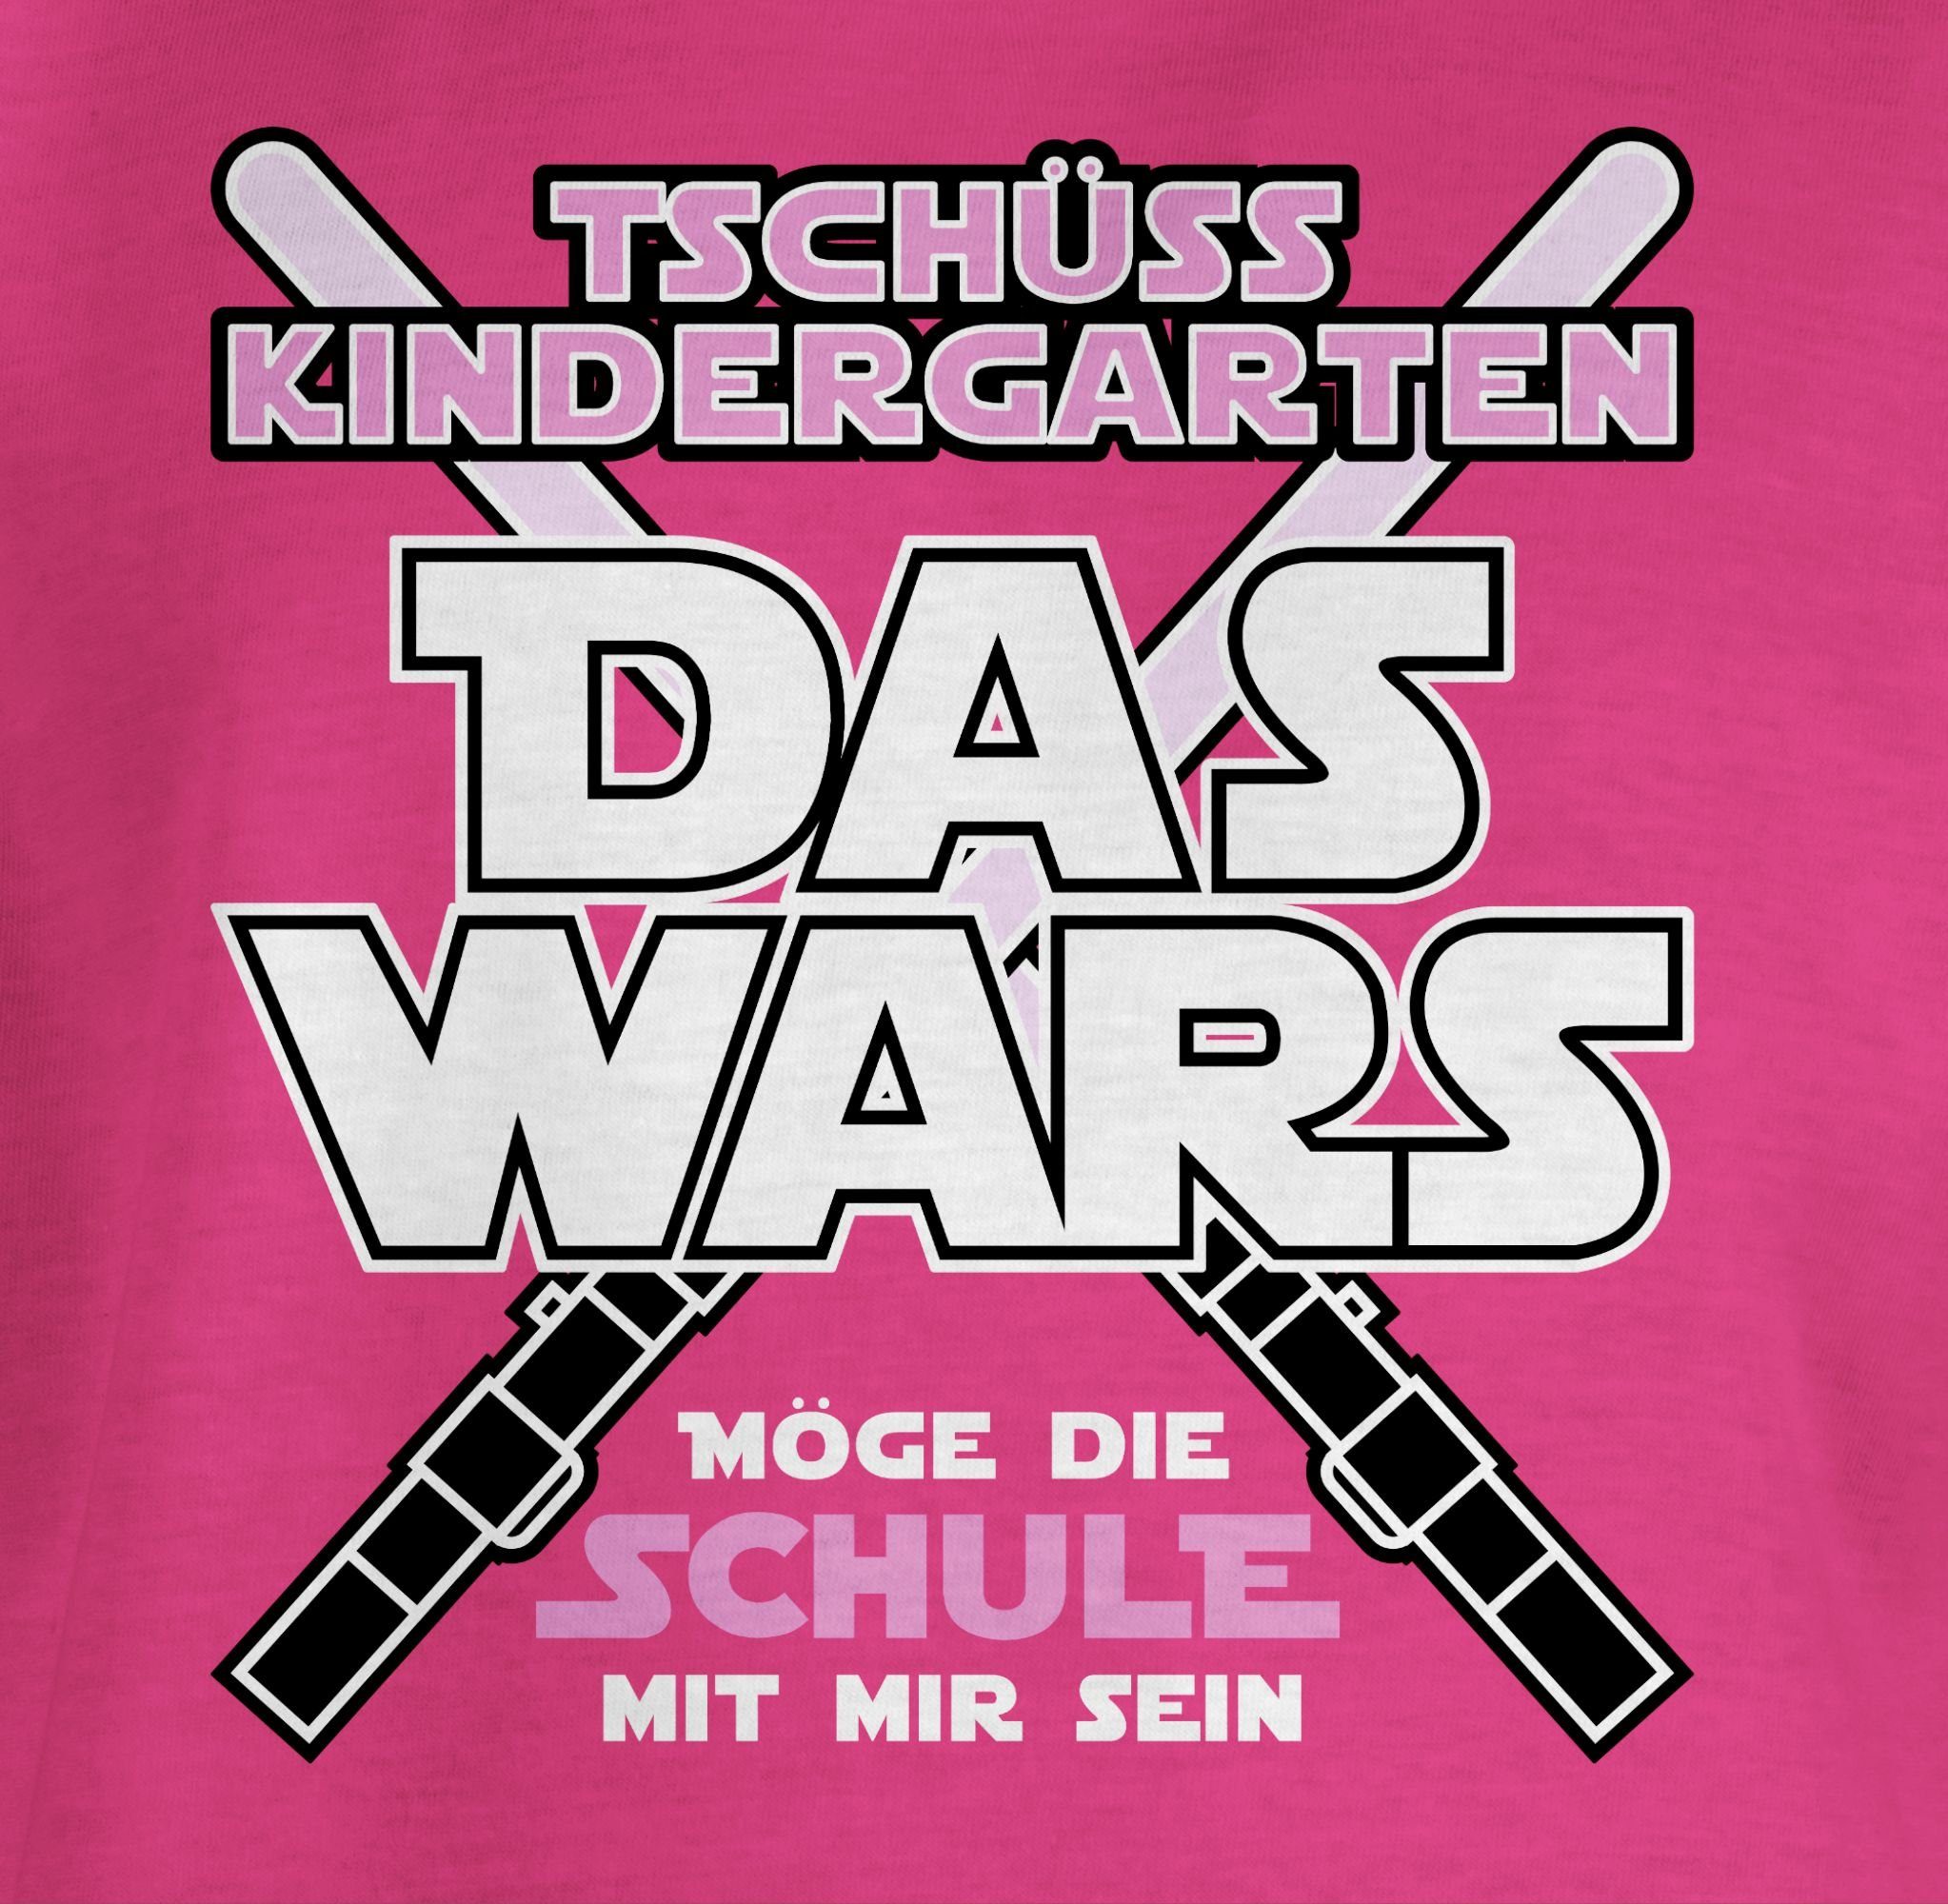 Shirtracer T-Shirt Das Einschulung Kindergarten 1 Rosa Wars Fuchsia Mädchen